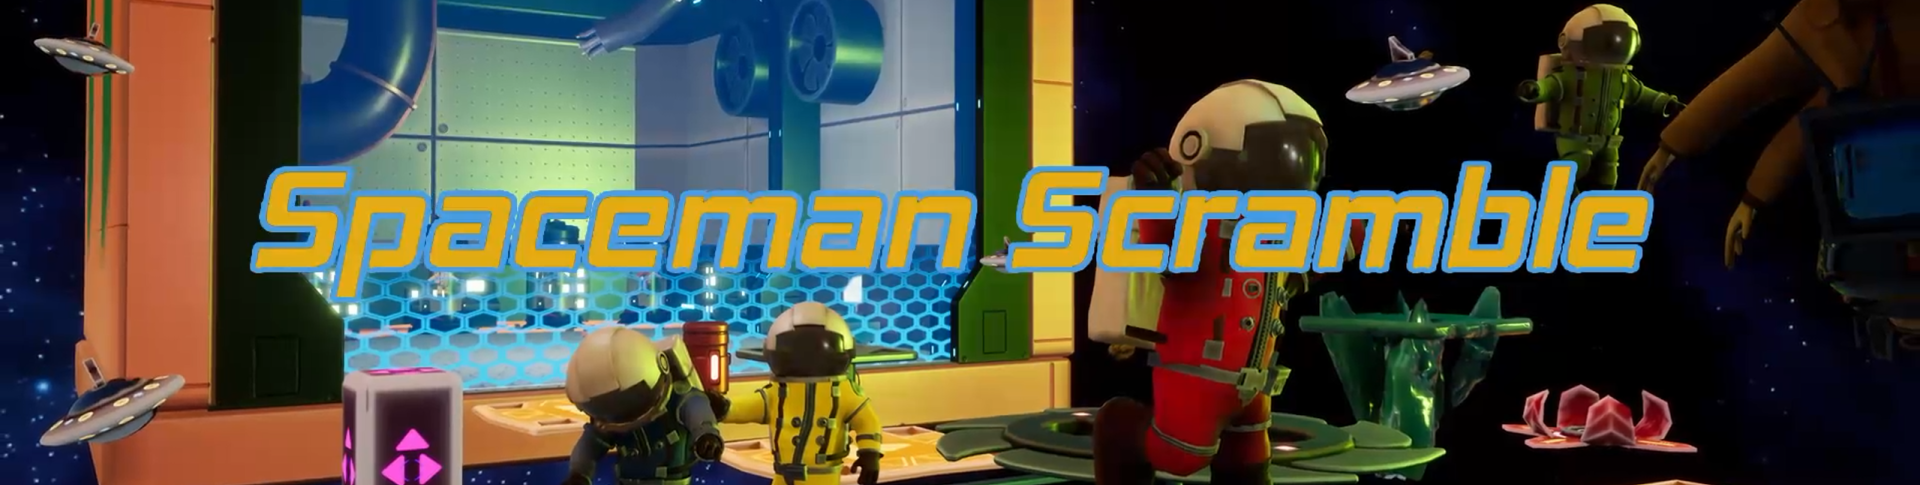 Spaceman Scramble